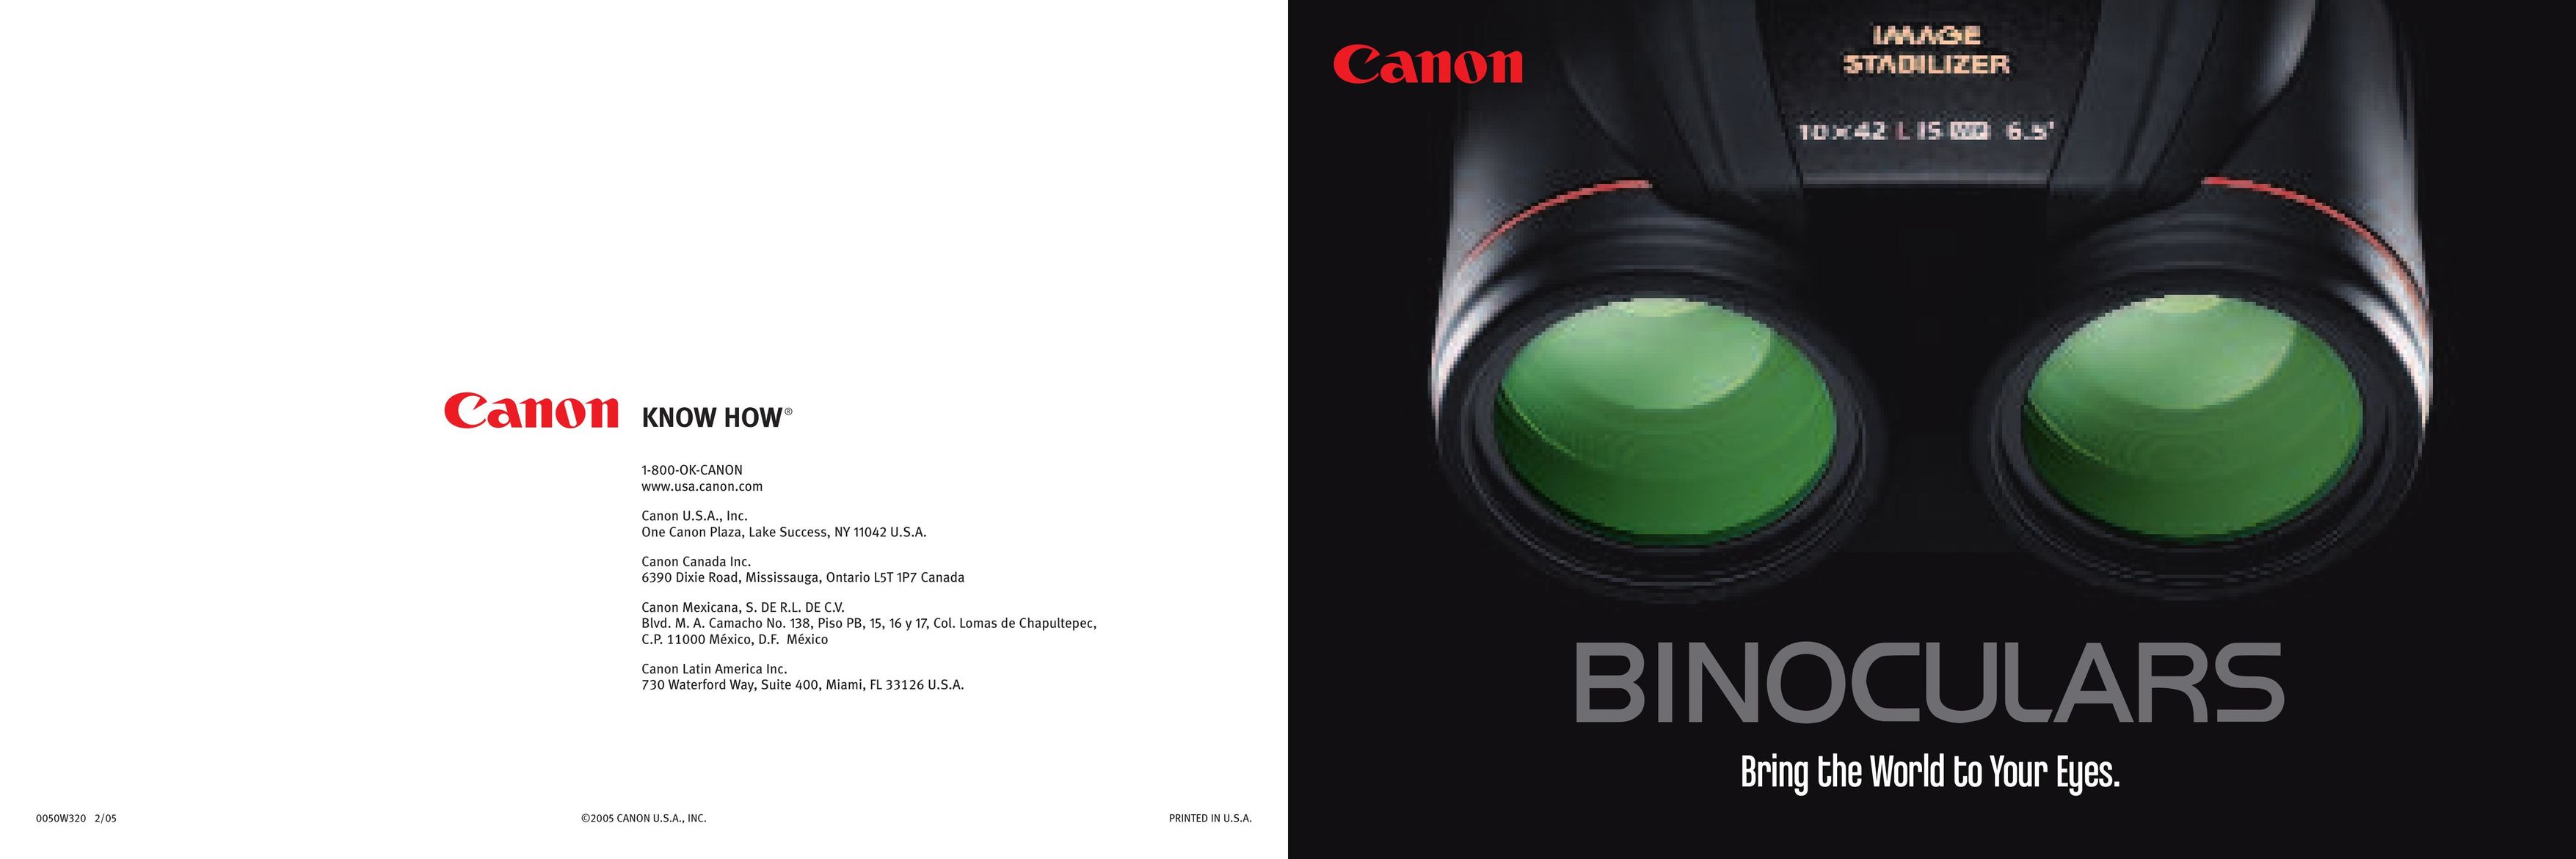 Canon 10x42L IS WP Binoculars User Manual